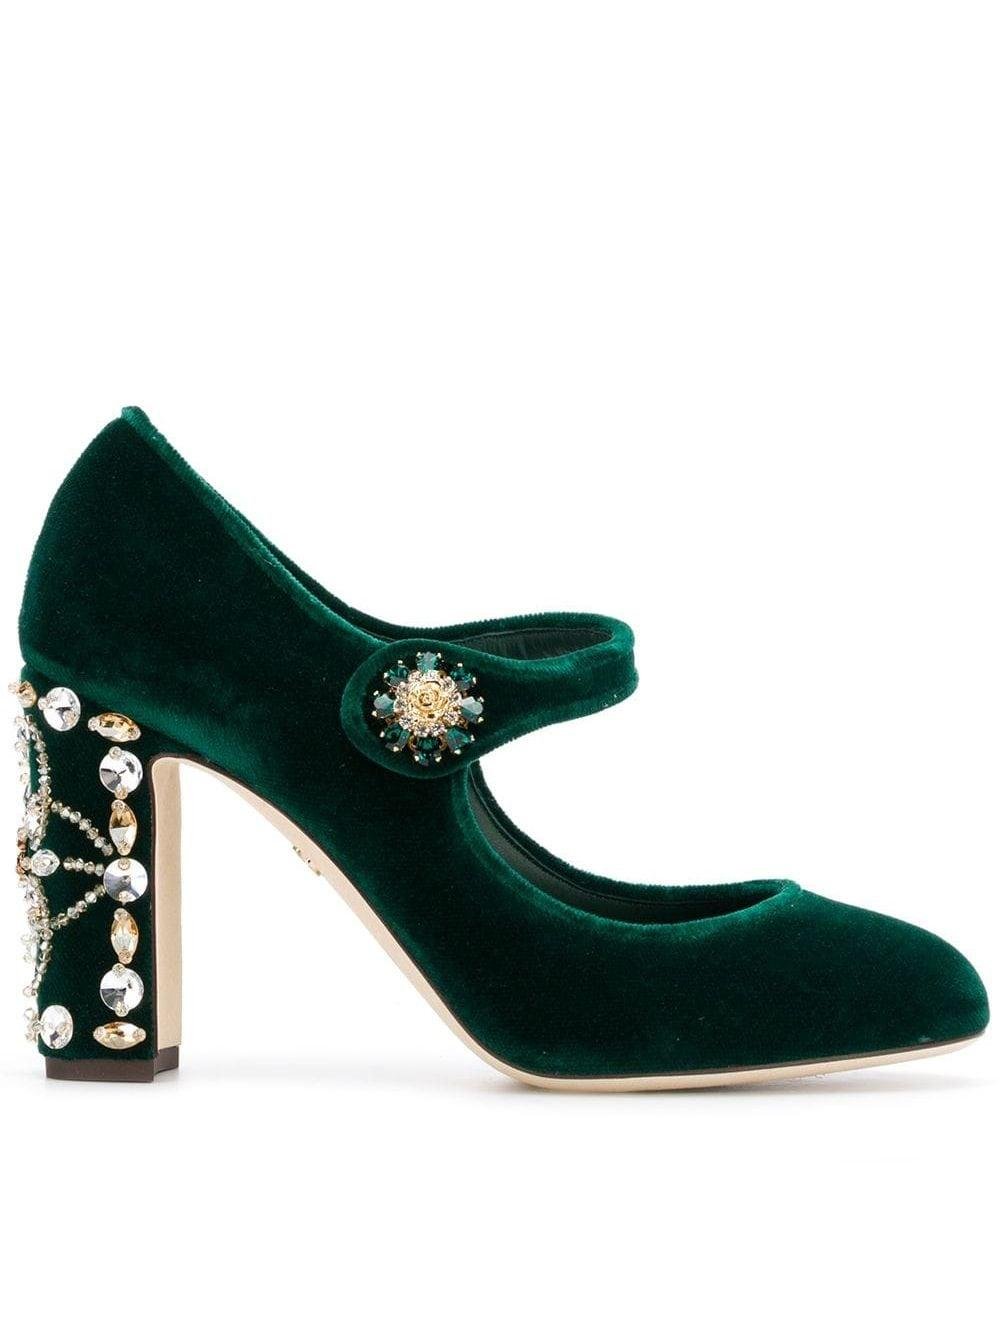 Dolce & Gabbana Velvet Mary Jane Pumps in Green | Lyst